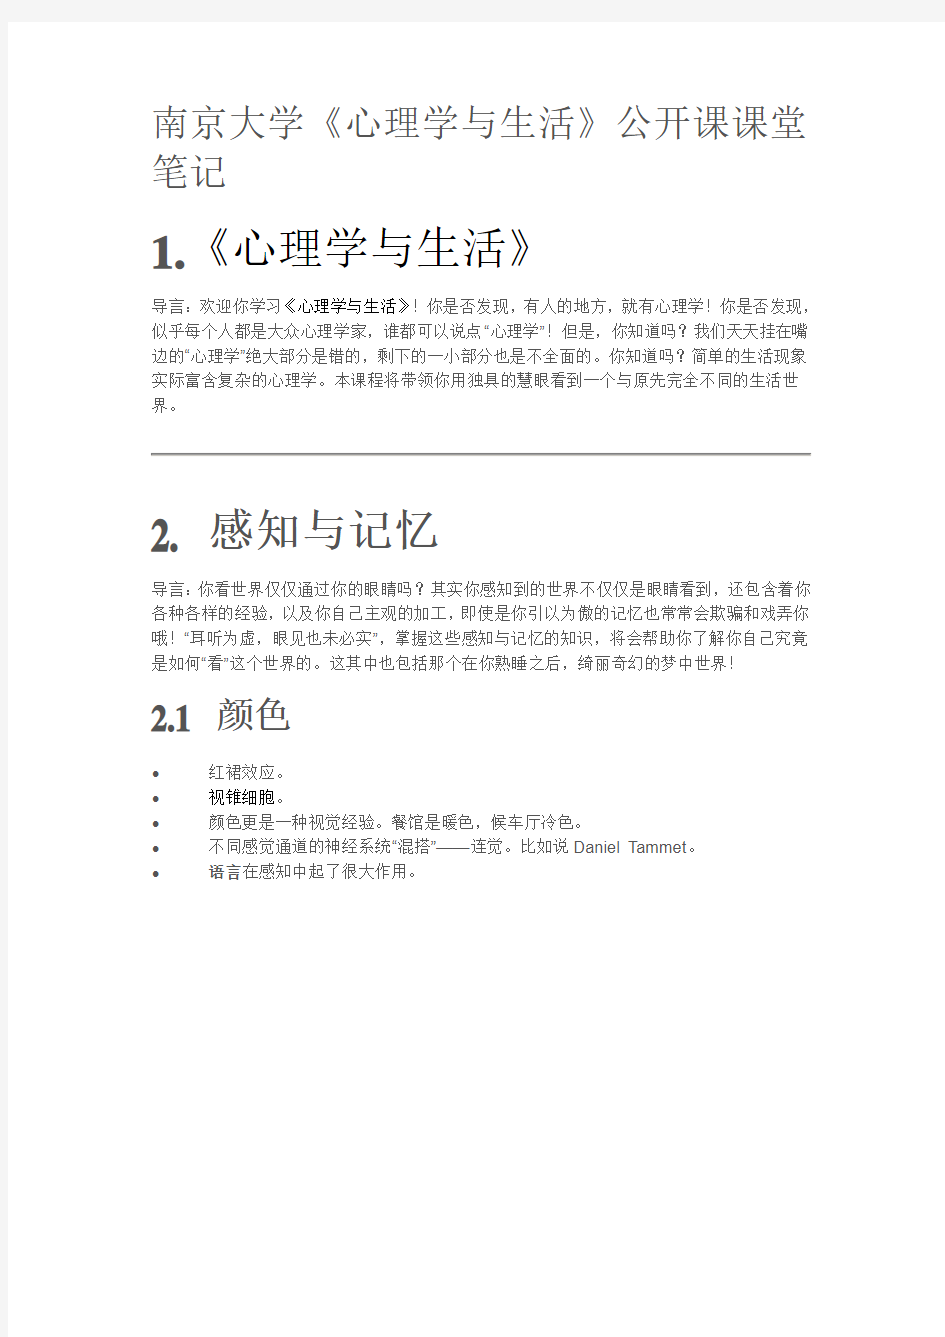 南京大学《心理学与生活》笔记汇总-共23页